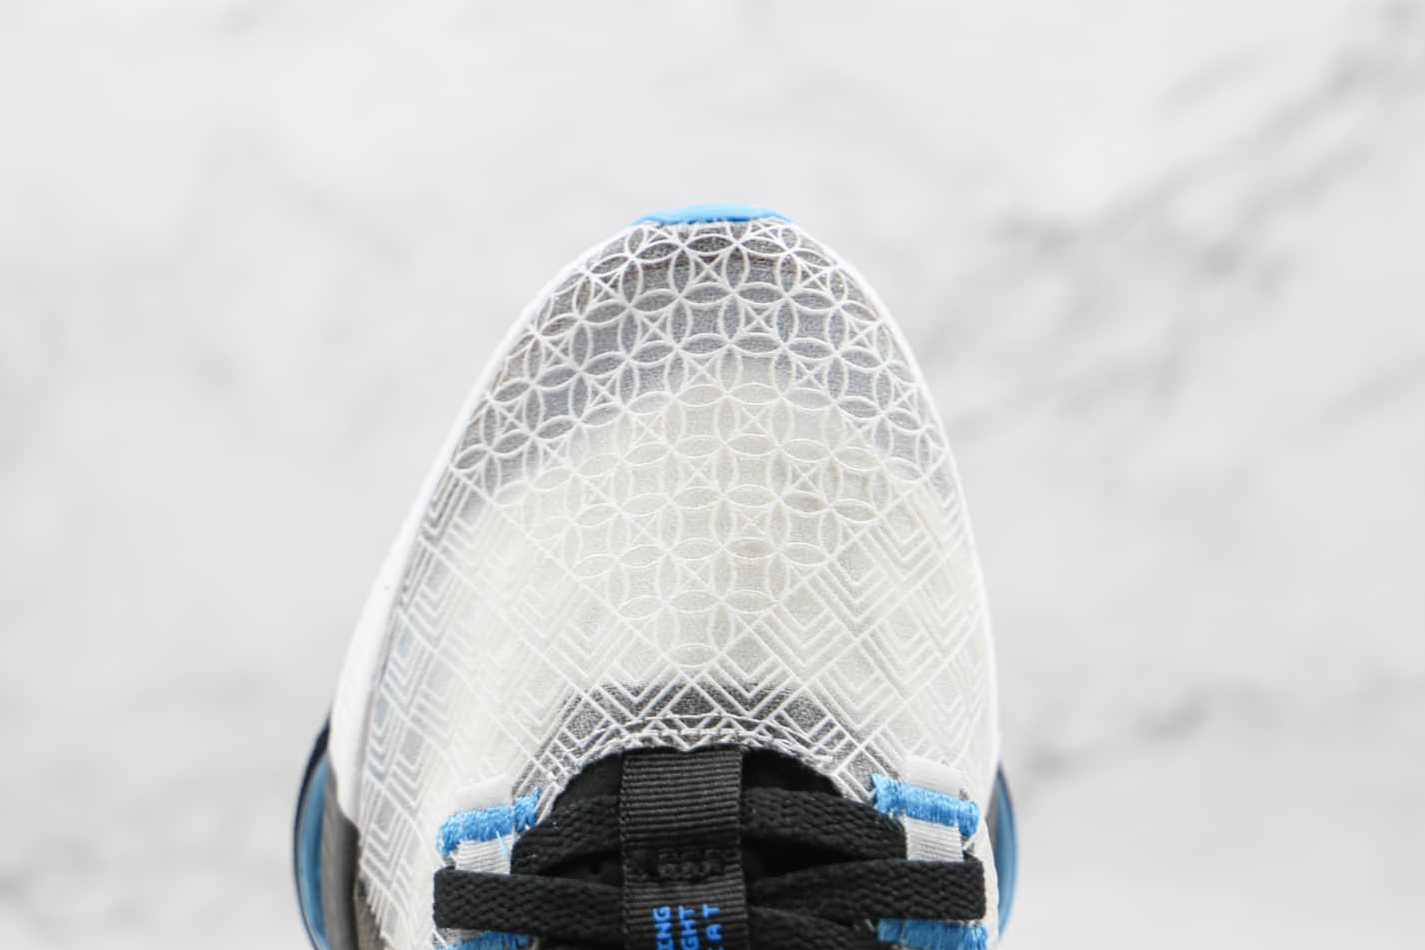 Nike Jordan Air Zoom Renegade Black Grey CJ5383-101 - Premium Athletic Sneakers at Affordable Prices